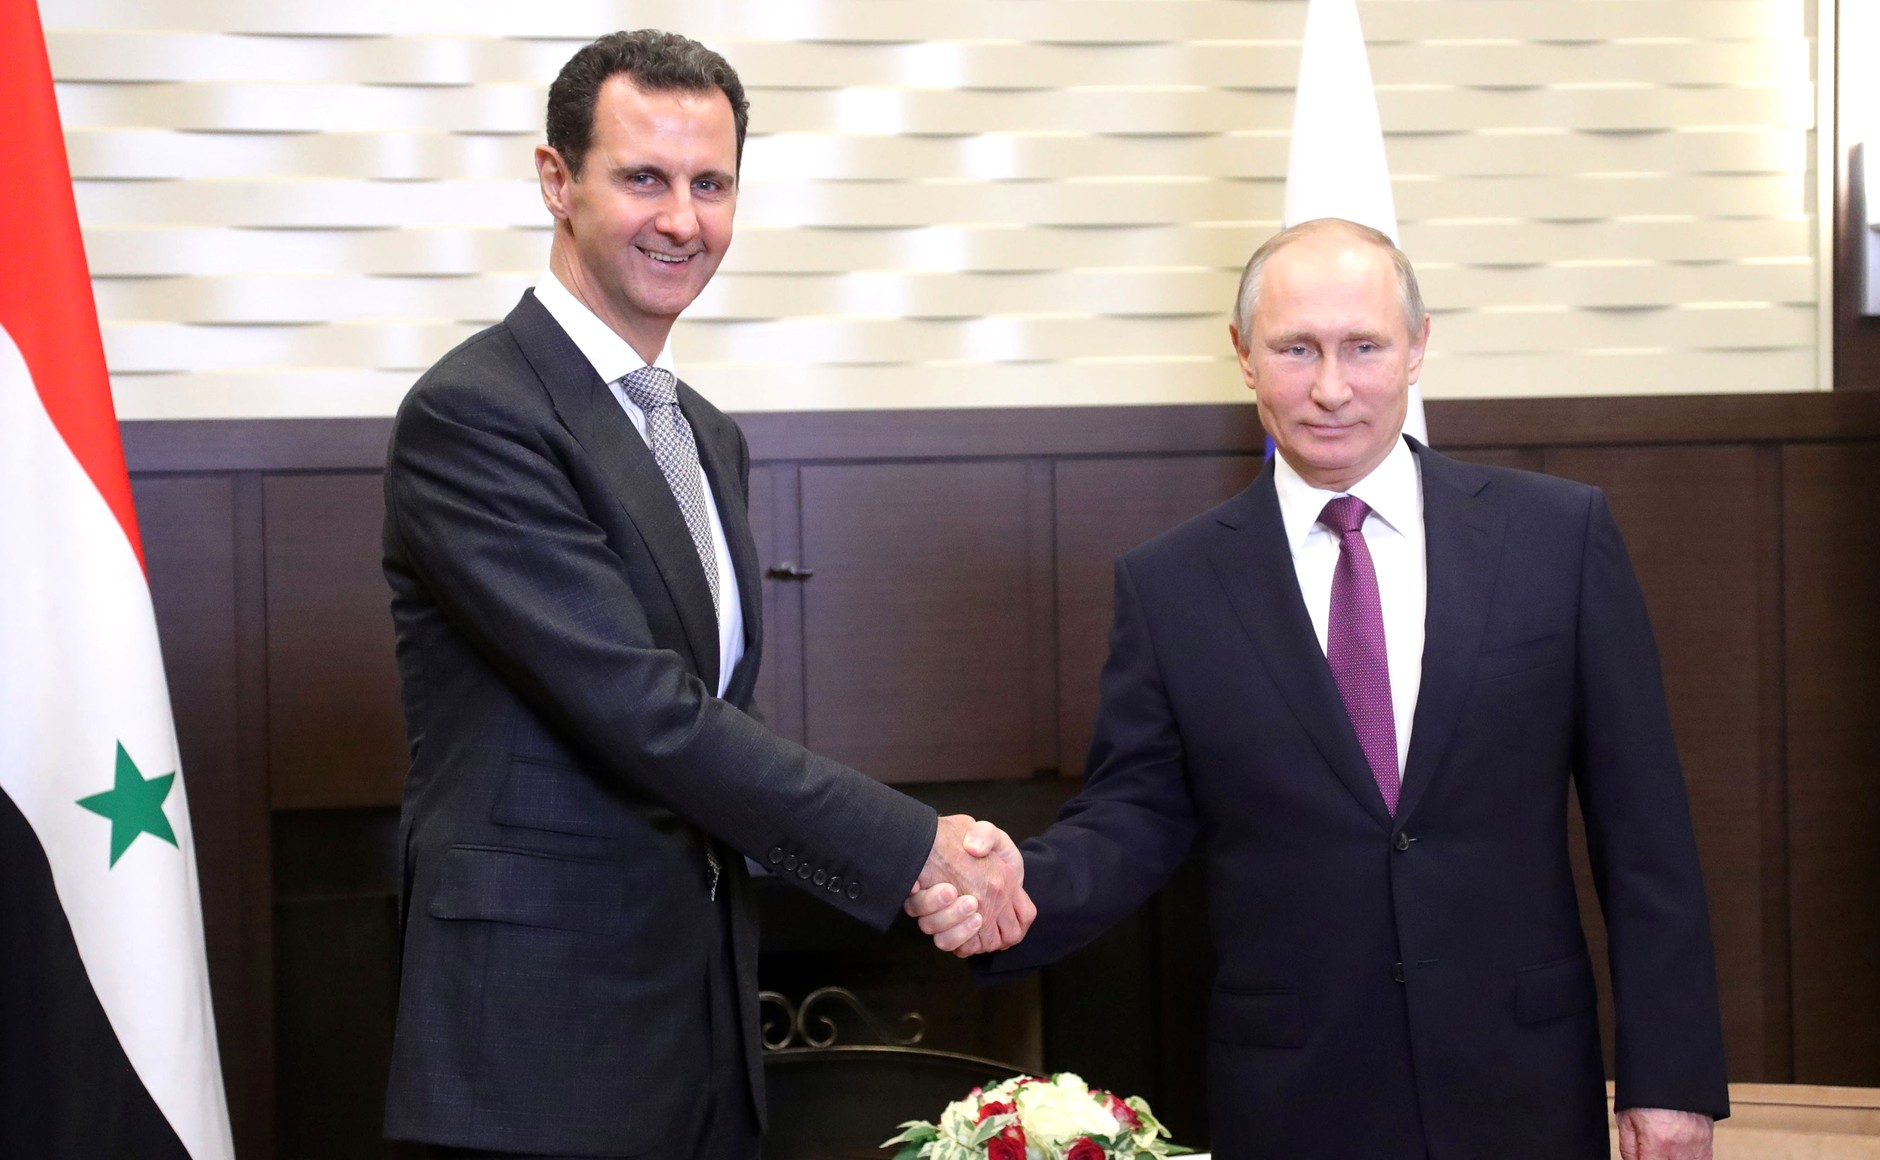 President Assad og President Putin tar hverandre i hendene og smiler til kamera.